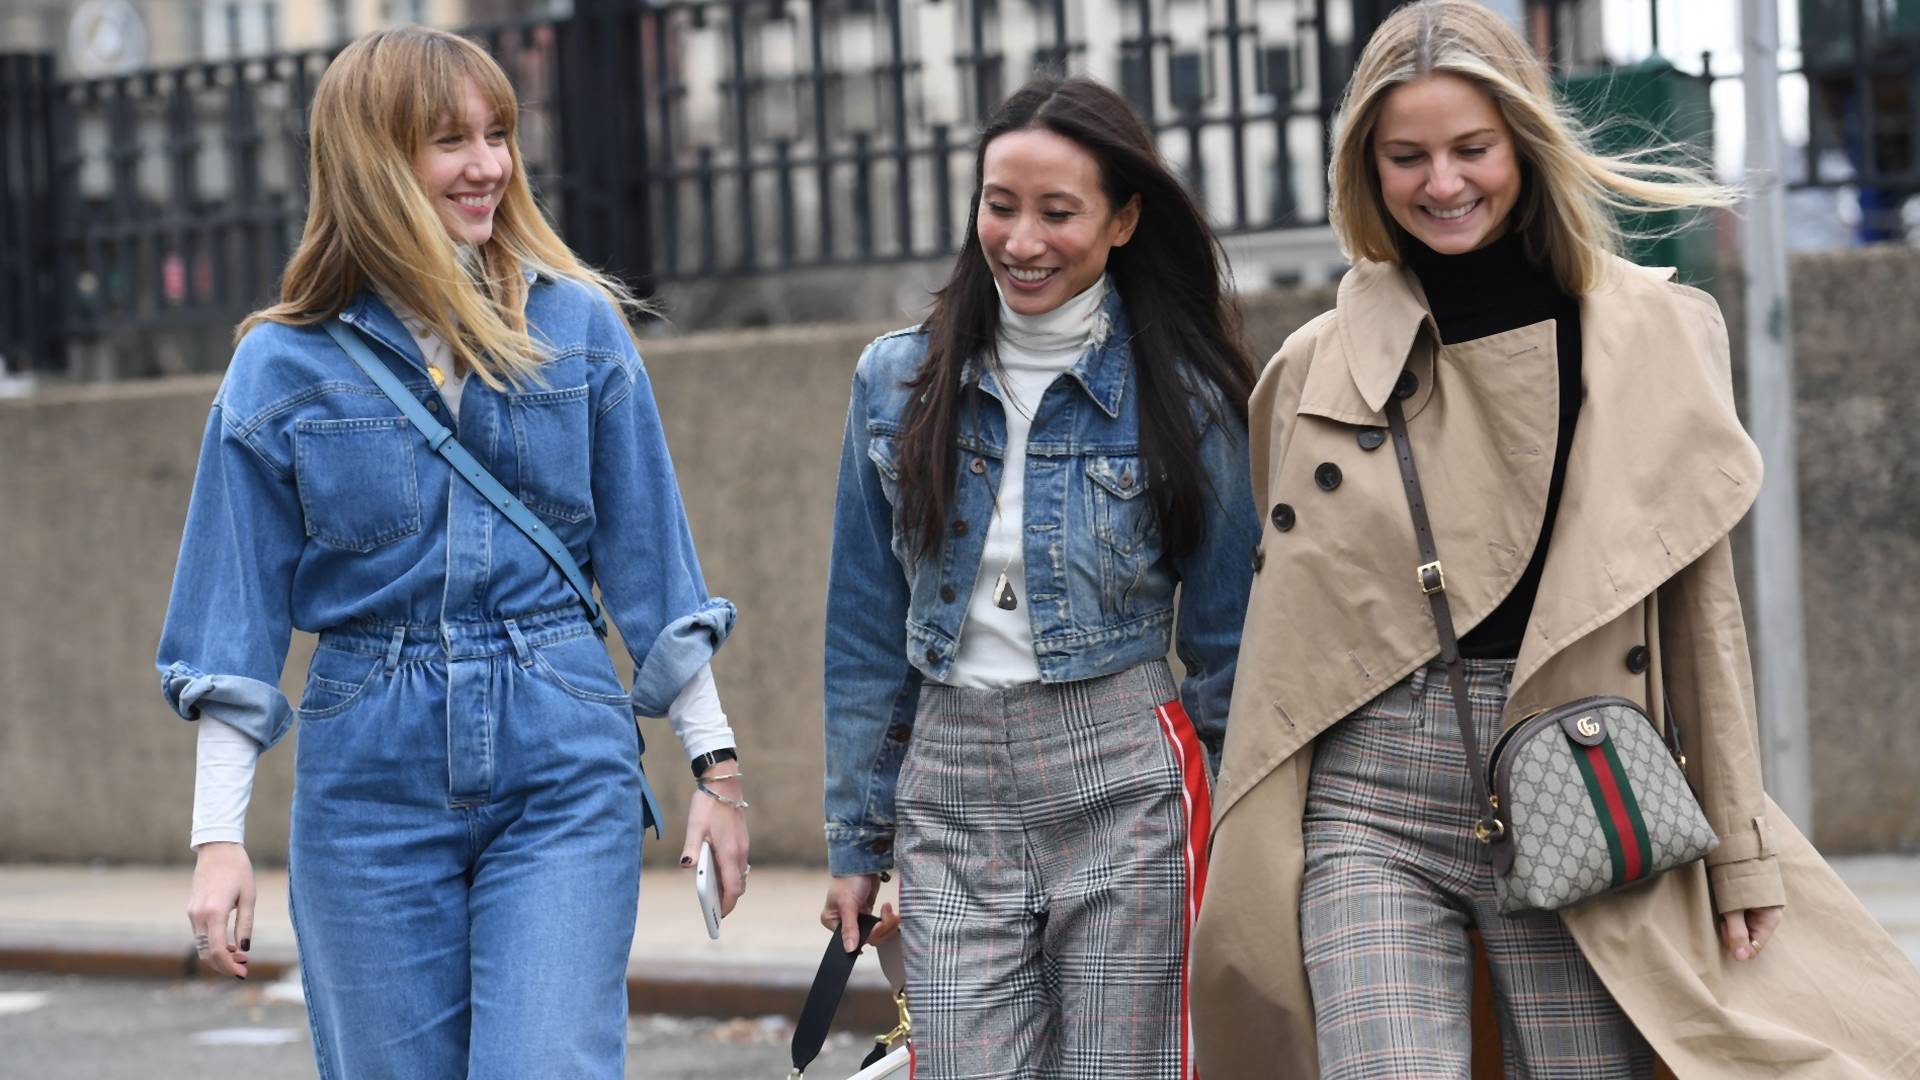 Tym będzie żył świat mody według Pinteresta - 10 najgorętszych trendów na 2019 rok